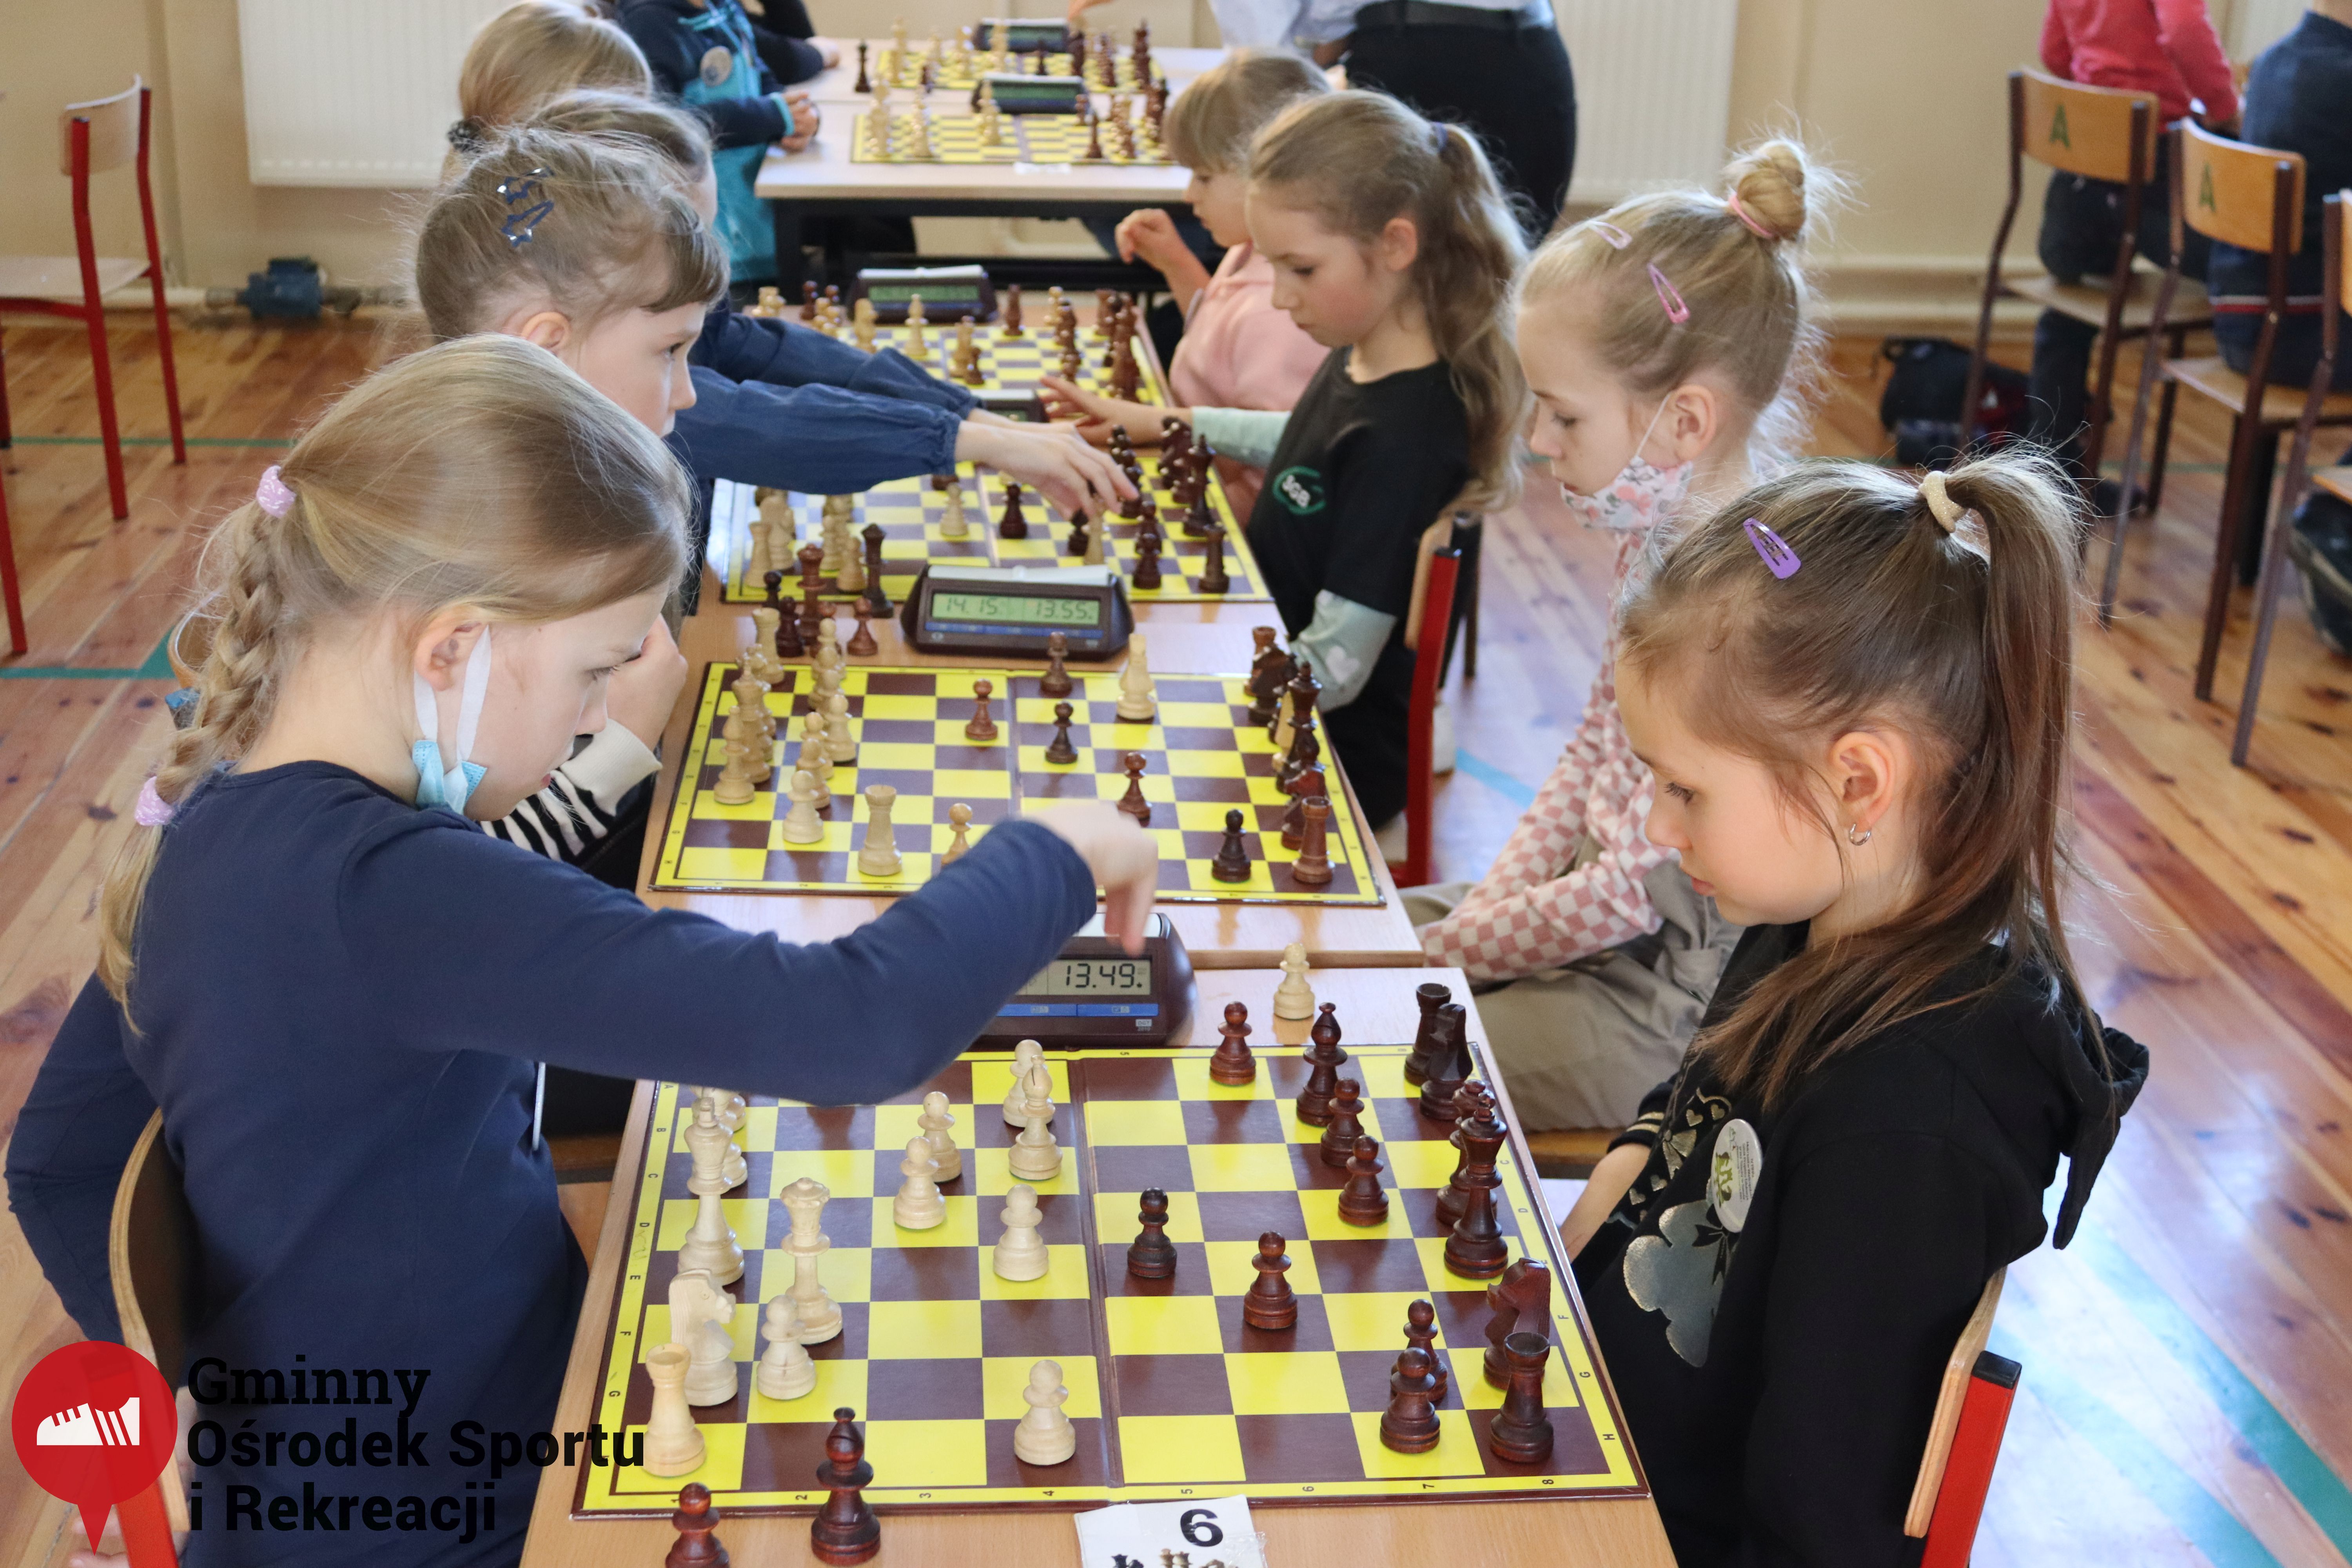 2022.03.12-13 Turniej szachowy - Edukacja przez Szachy030.jpg - 2,26 MB